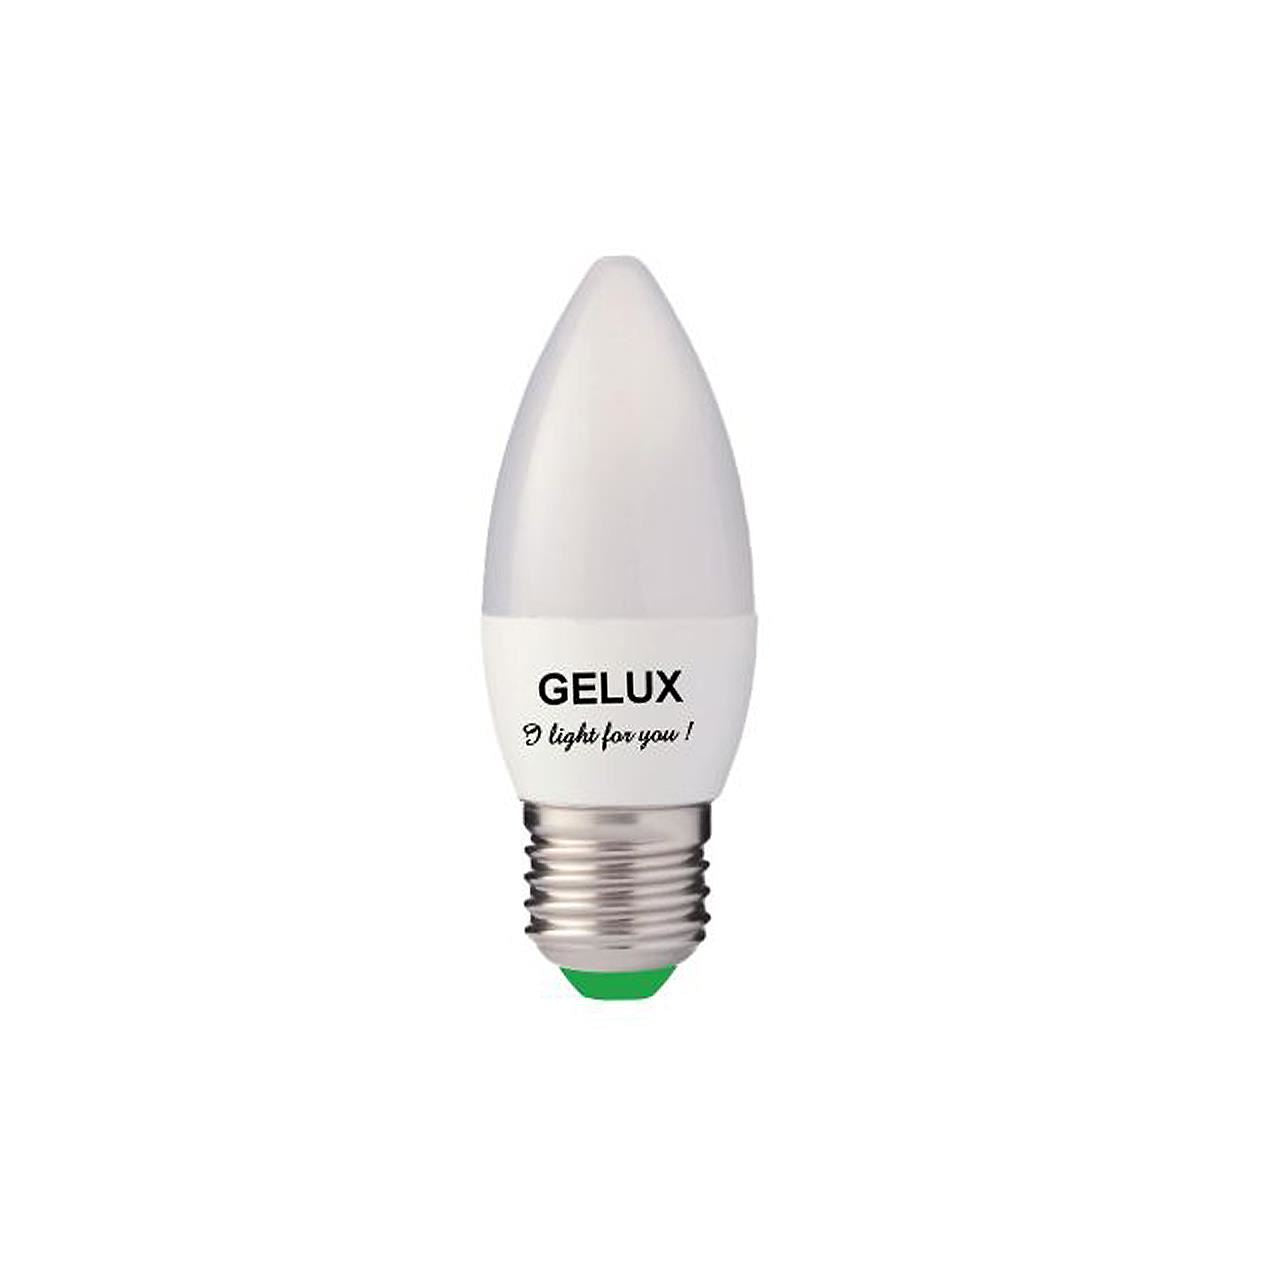 Bec LED Lumanare 8W E14 ECOLED, echivalent 64W lumina calda, Gelux